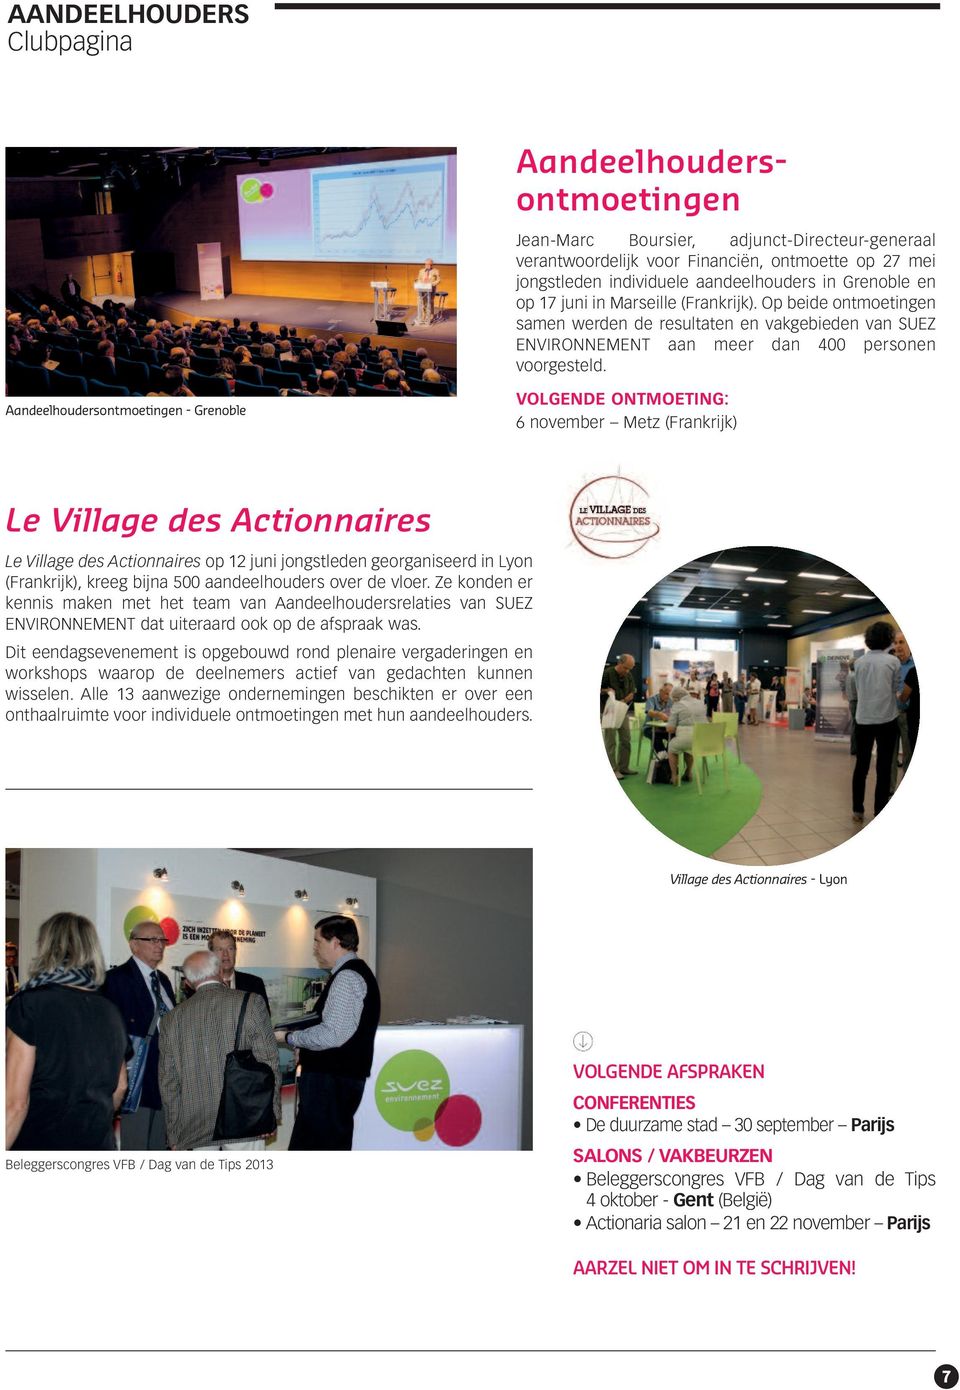 Aandeelhoudersontmoetingen - Grenoble VOLGENDE ONTMOETING: 6 november Metz (Frankrijk) Le Village des Actionnaires Le Village des Actionnaires op 12 juni jongstleden georganiseerd in Lyon